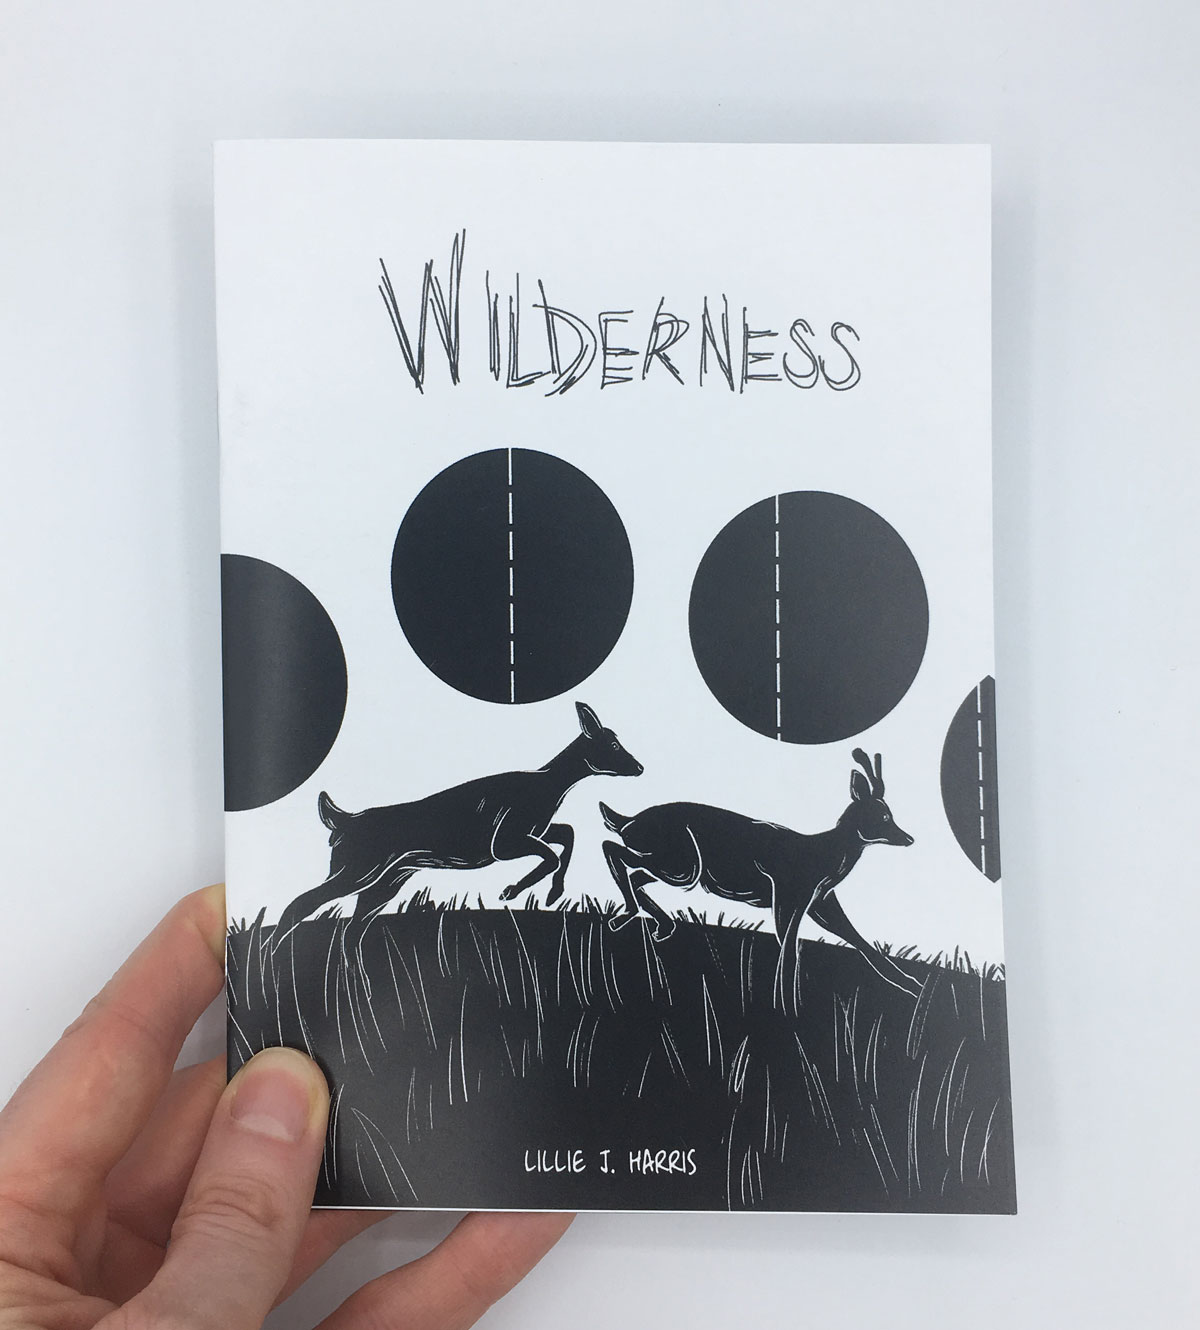 Wilderness: Prologue